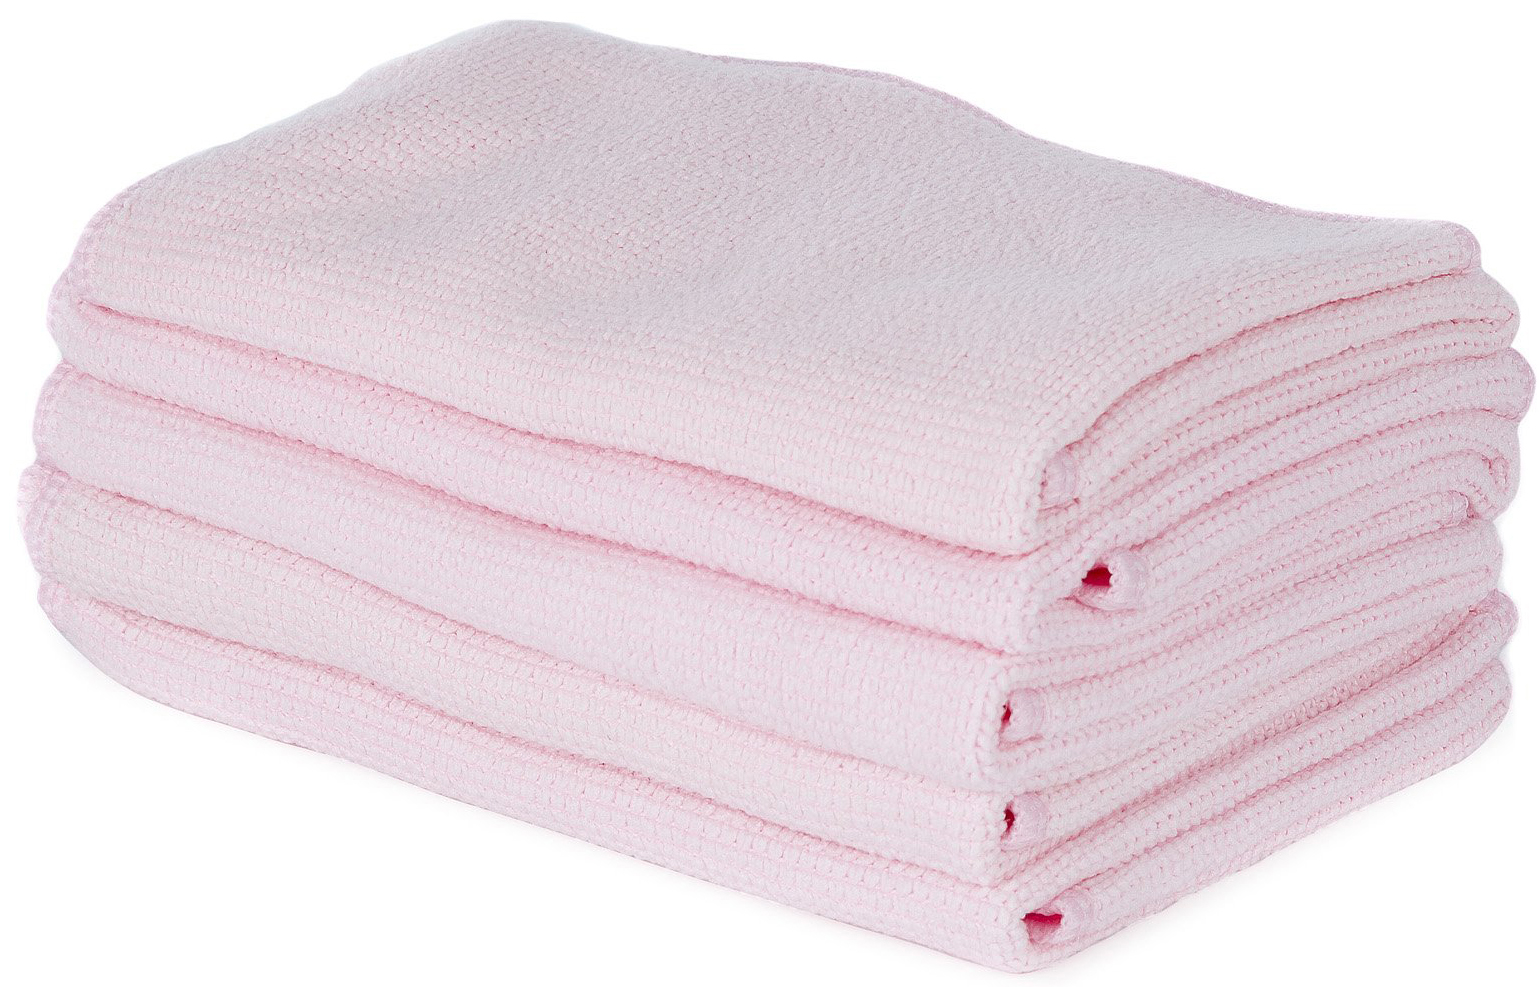 12"x12" Atlas Graham® Ultrafibre HandCloth, Pola Millentex Fibre, Pink